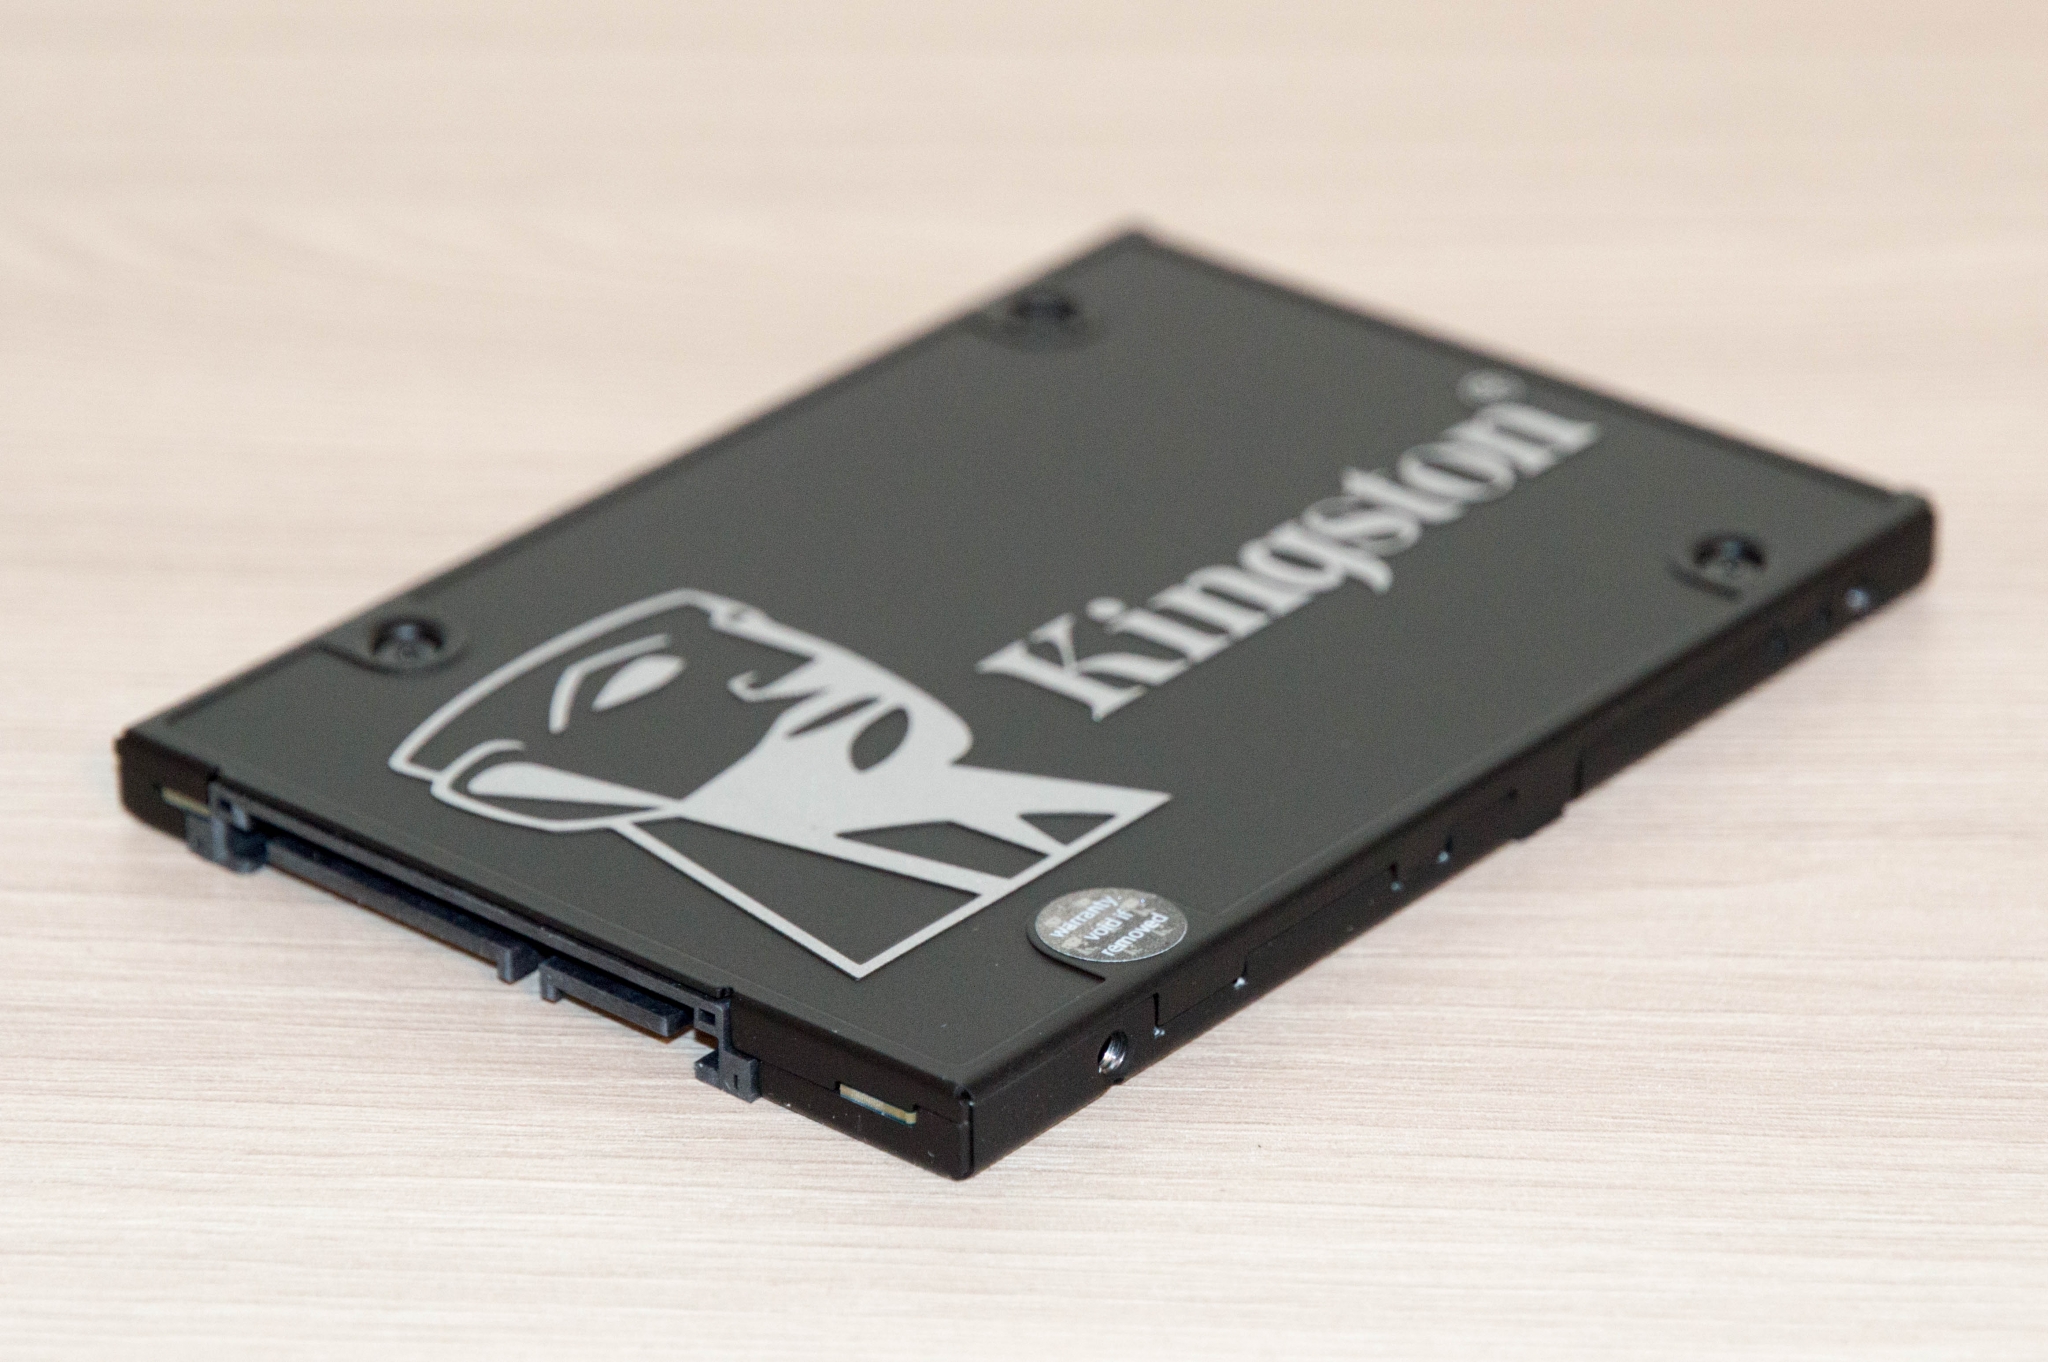 Ssd 512 гб kingston. SSD Kingston kc600. SSD Kingston kc600 256gb. SSD накопитель Kingston kc600 256 ГБ (skc600/256g). 256 ГБ 2.5" SATA накопитель Kingston kc600 [skc600/256g].